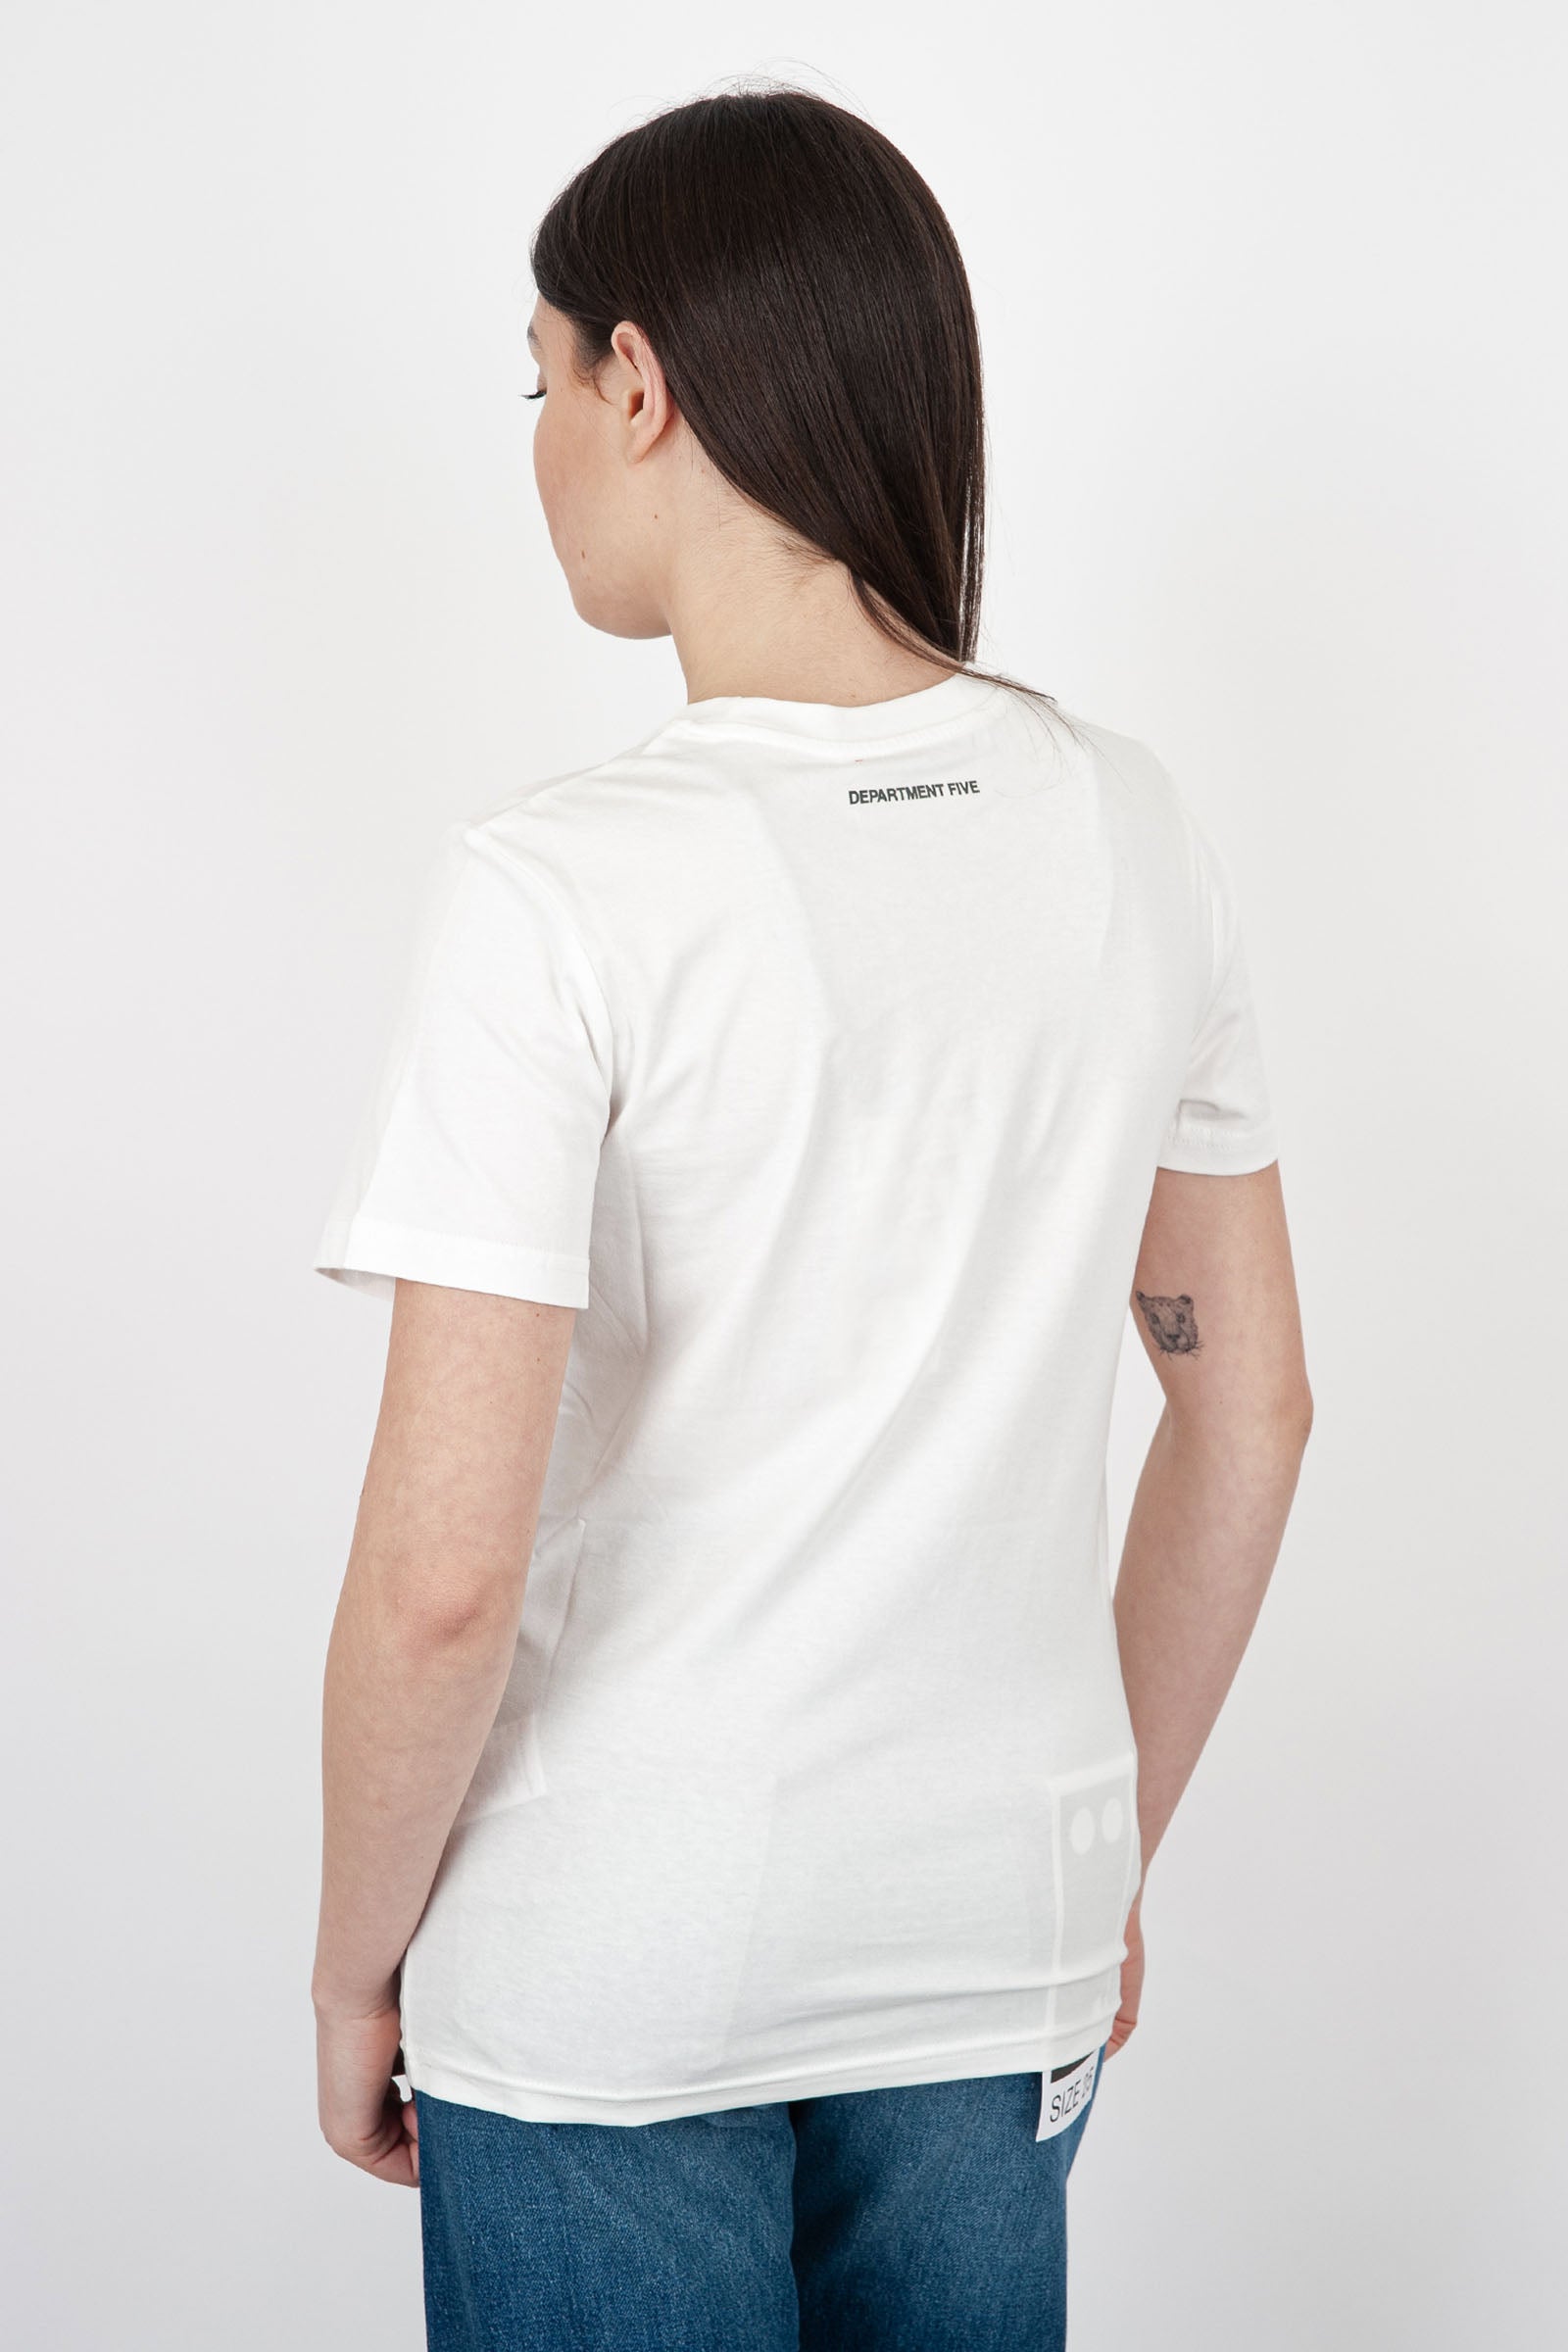 Department Five Crewneck Fleur T-Shirt in White Cotton - 4